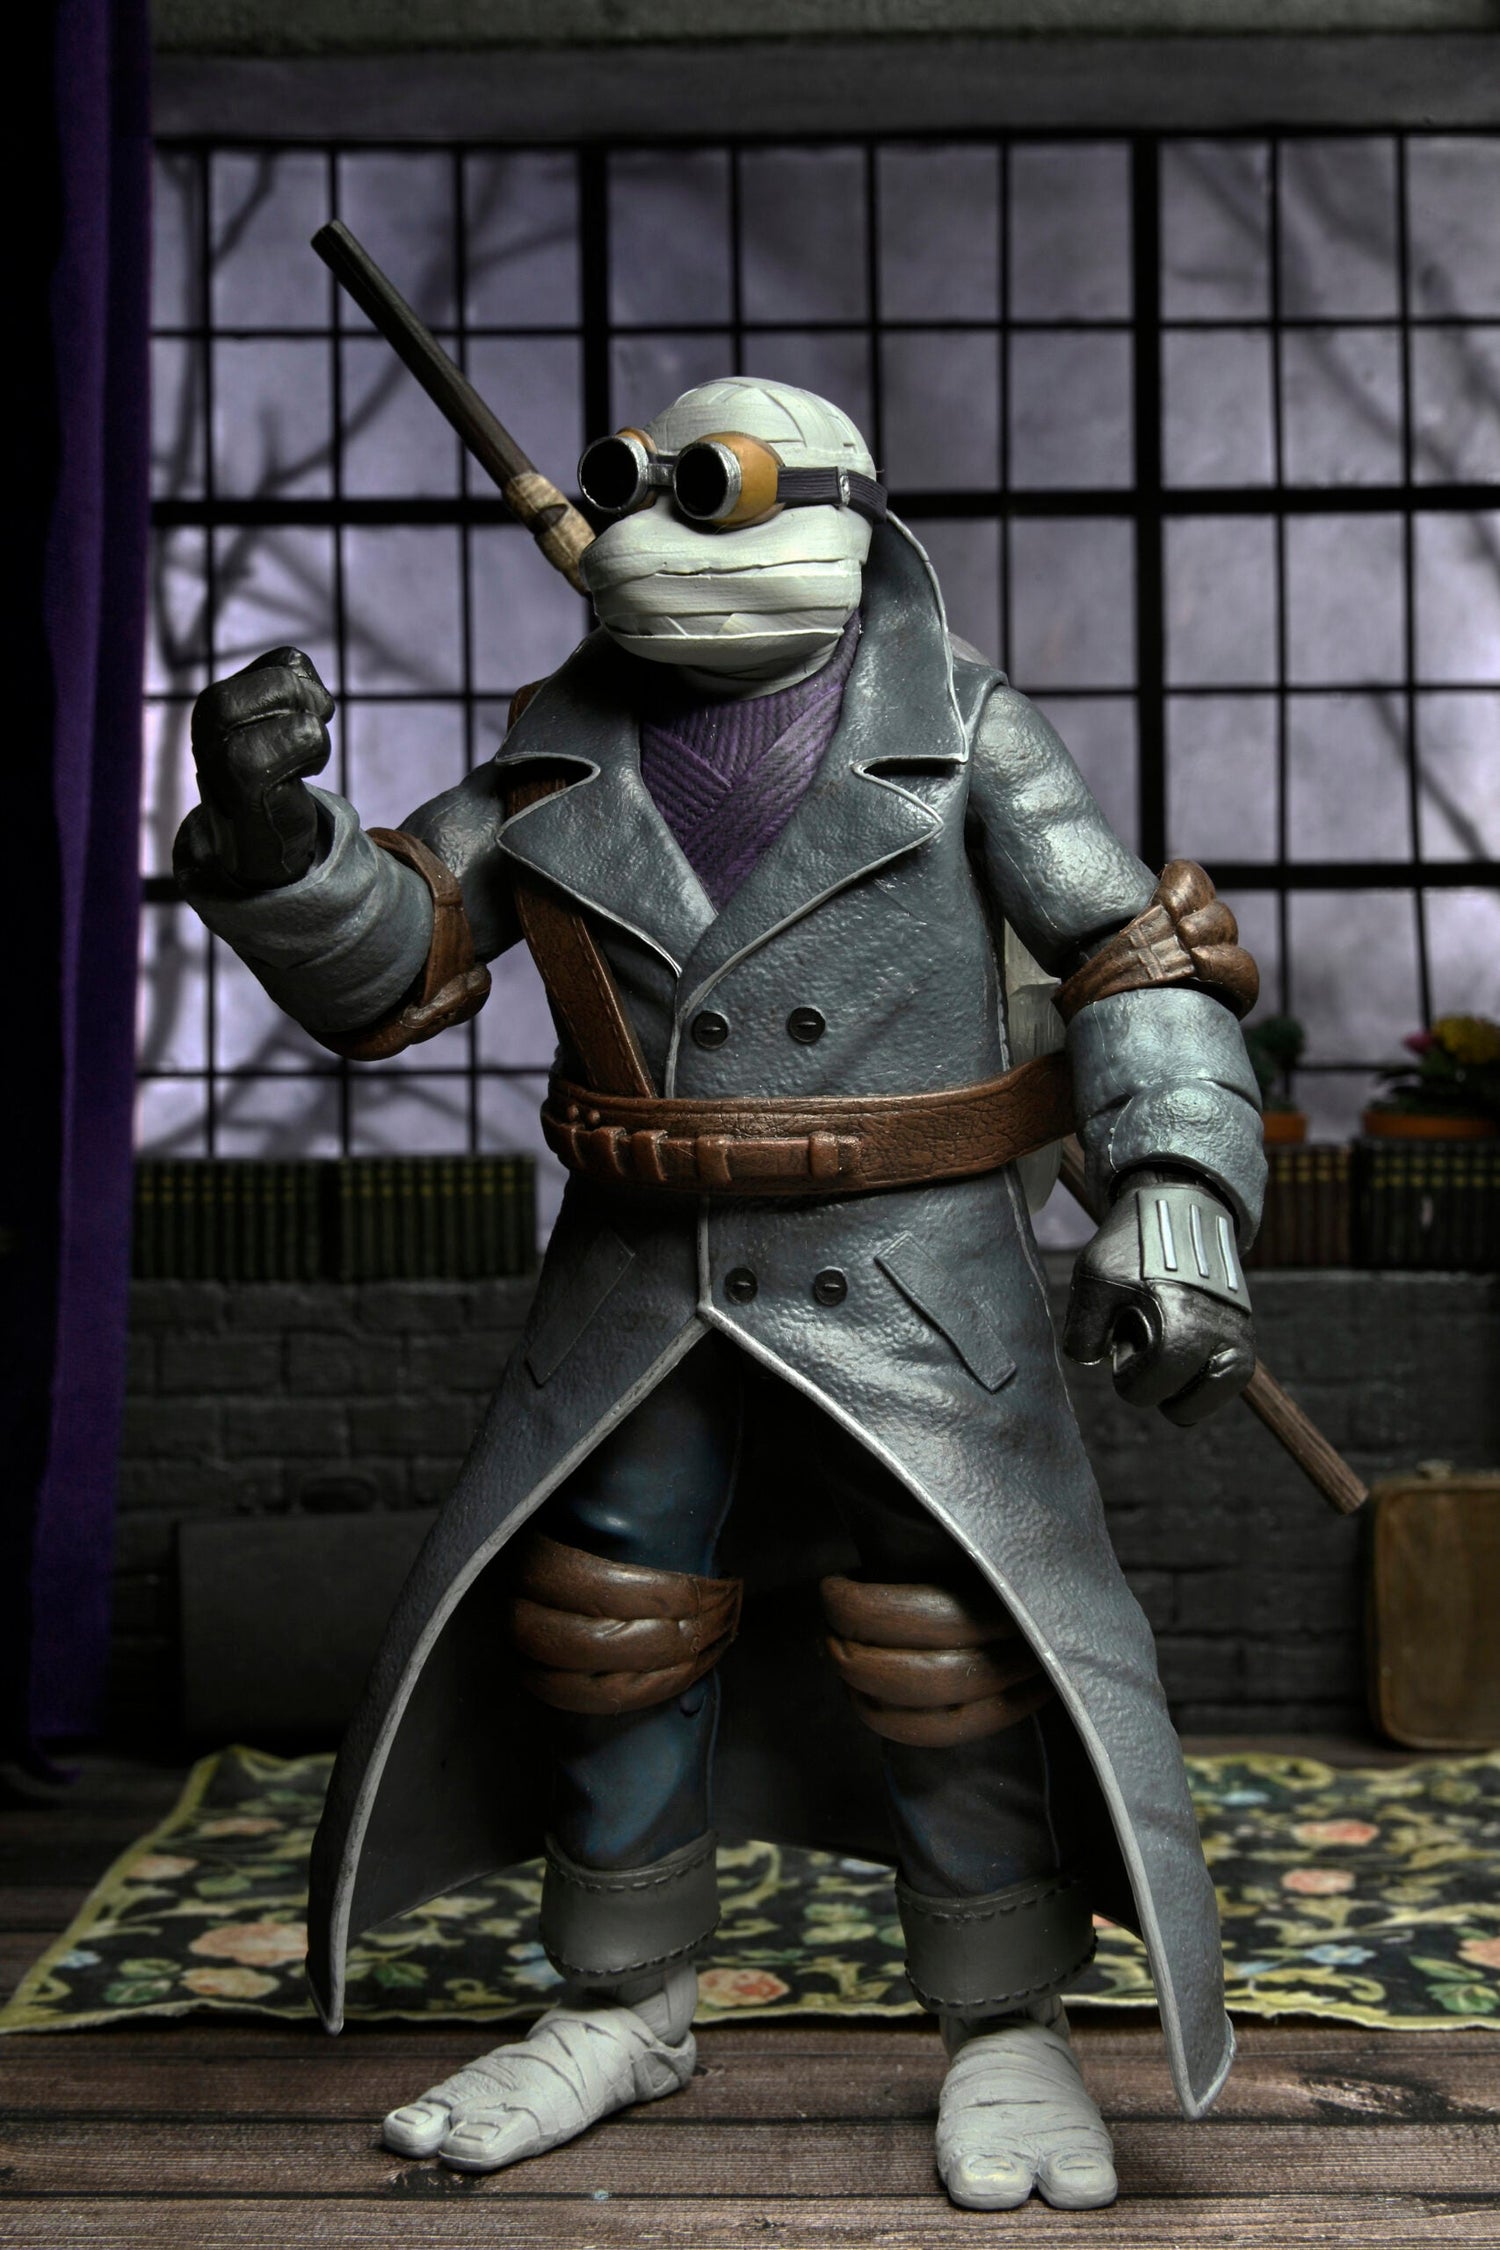 NECA Universal Monsters Teenage Mutant Ninja Turtles Donatello as The Invisible Man NECA